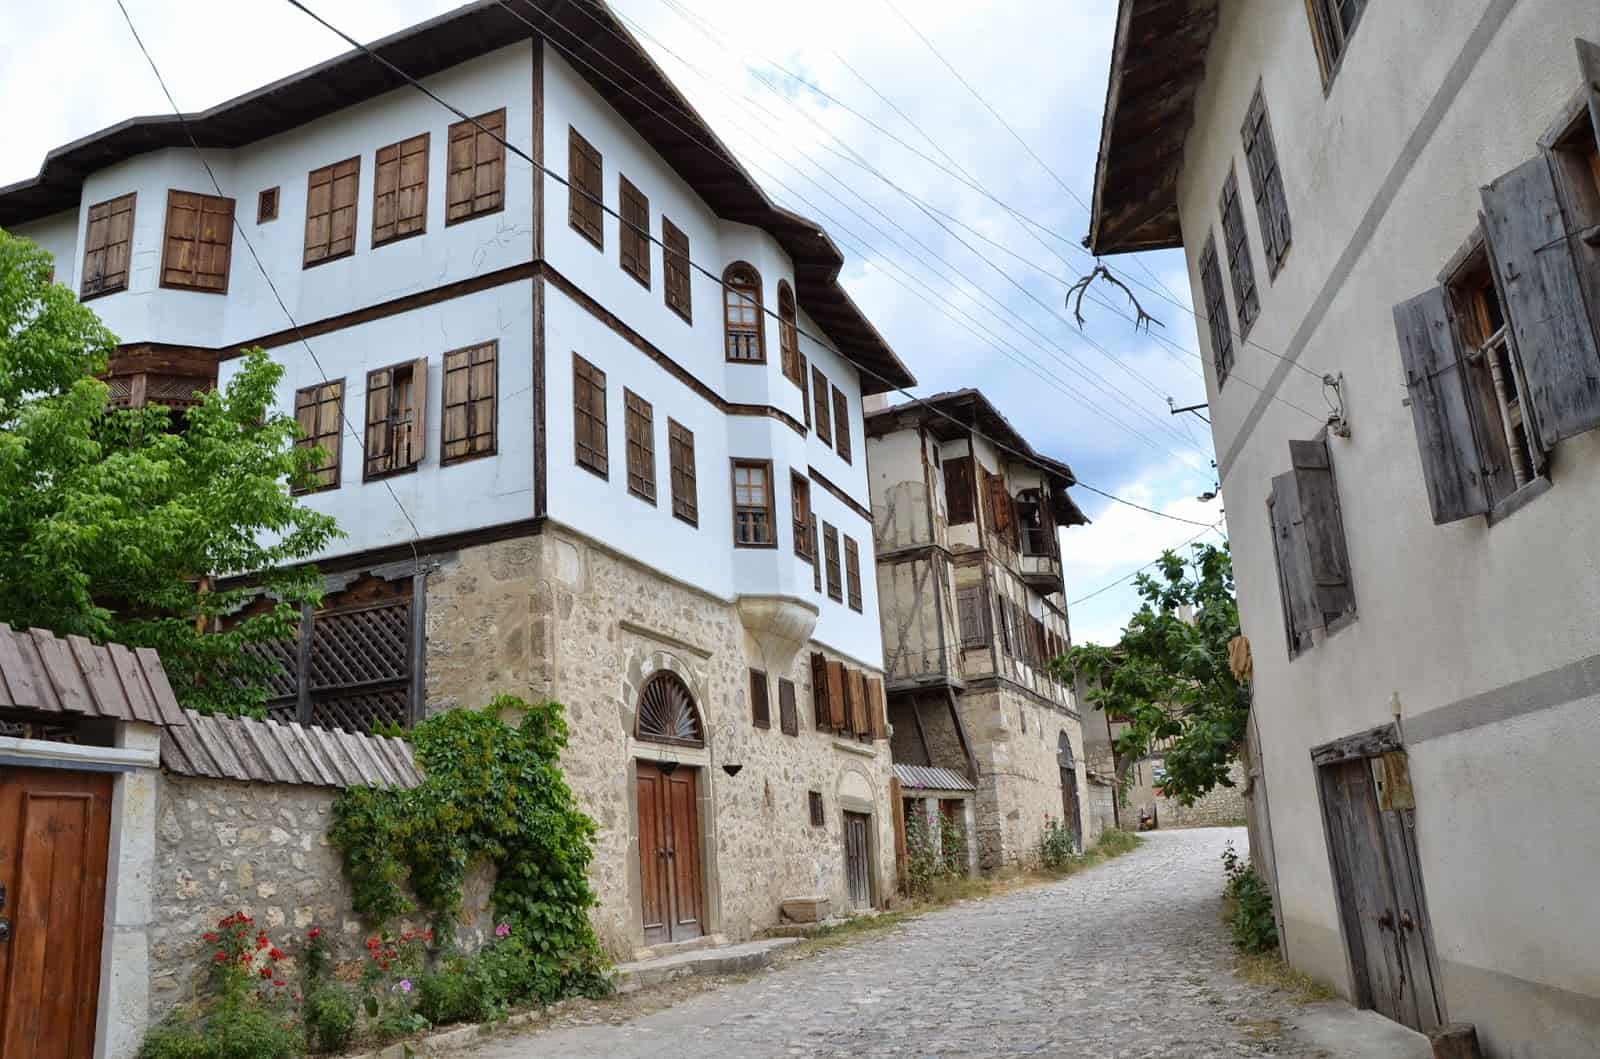 Yörükköyü, Turkey